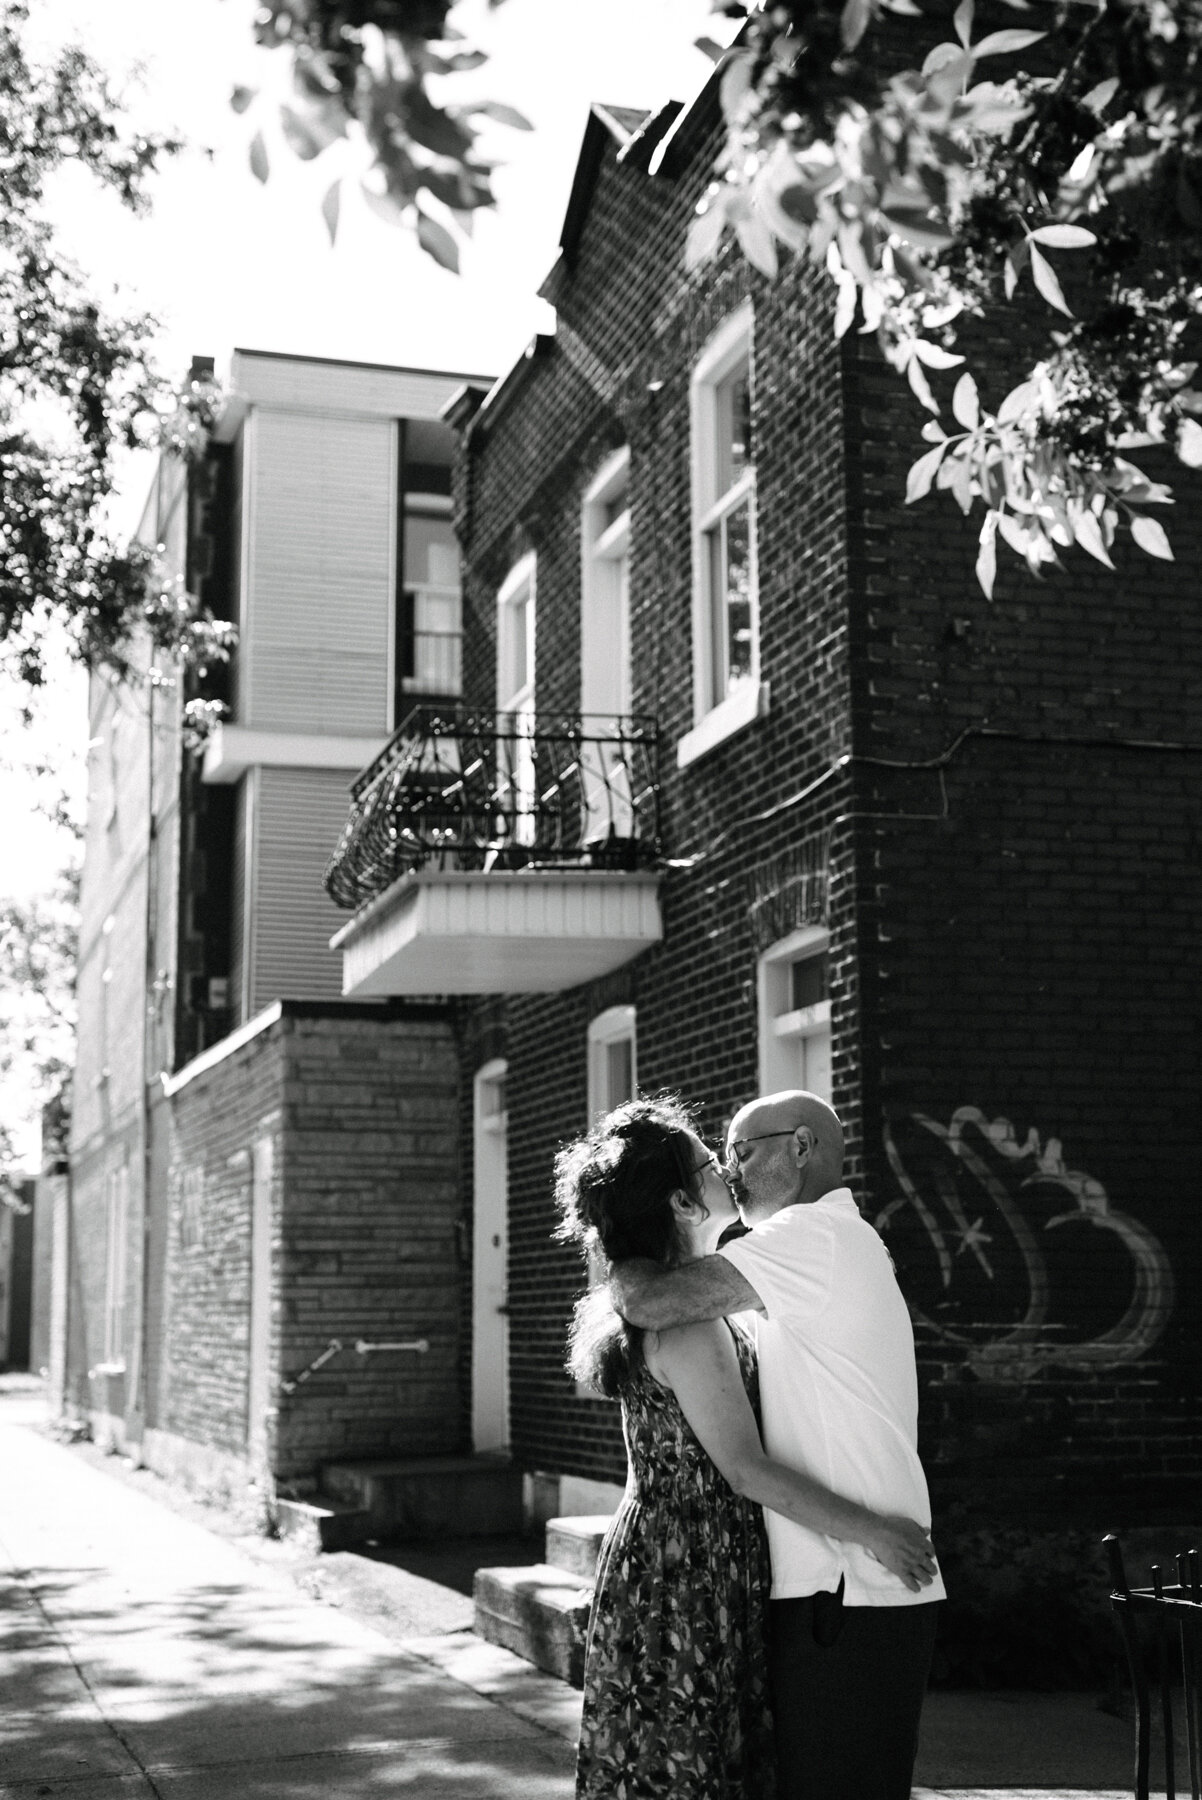 013photo-noir-et-blanc-couple-d-age-mur-qui-s-embrasse-devant-un-duplex-de-brique-photographe-de-famille-a-montreal-marianne-charland-295.jpg